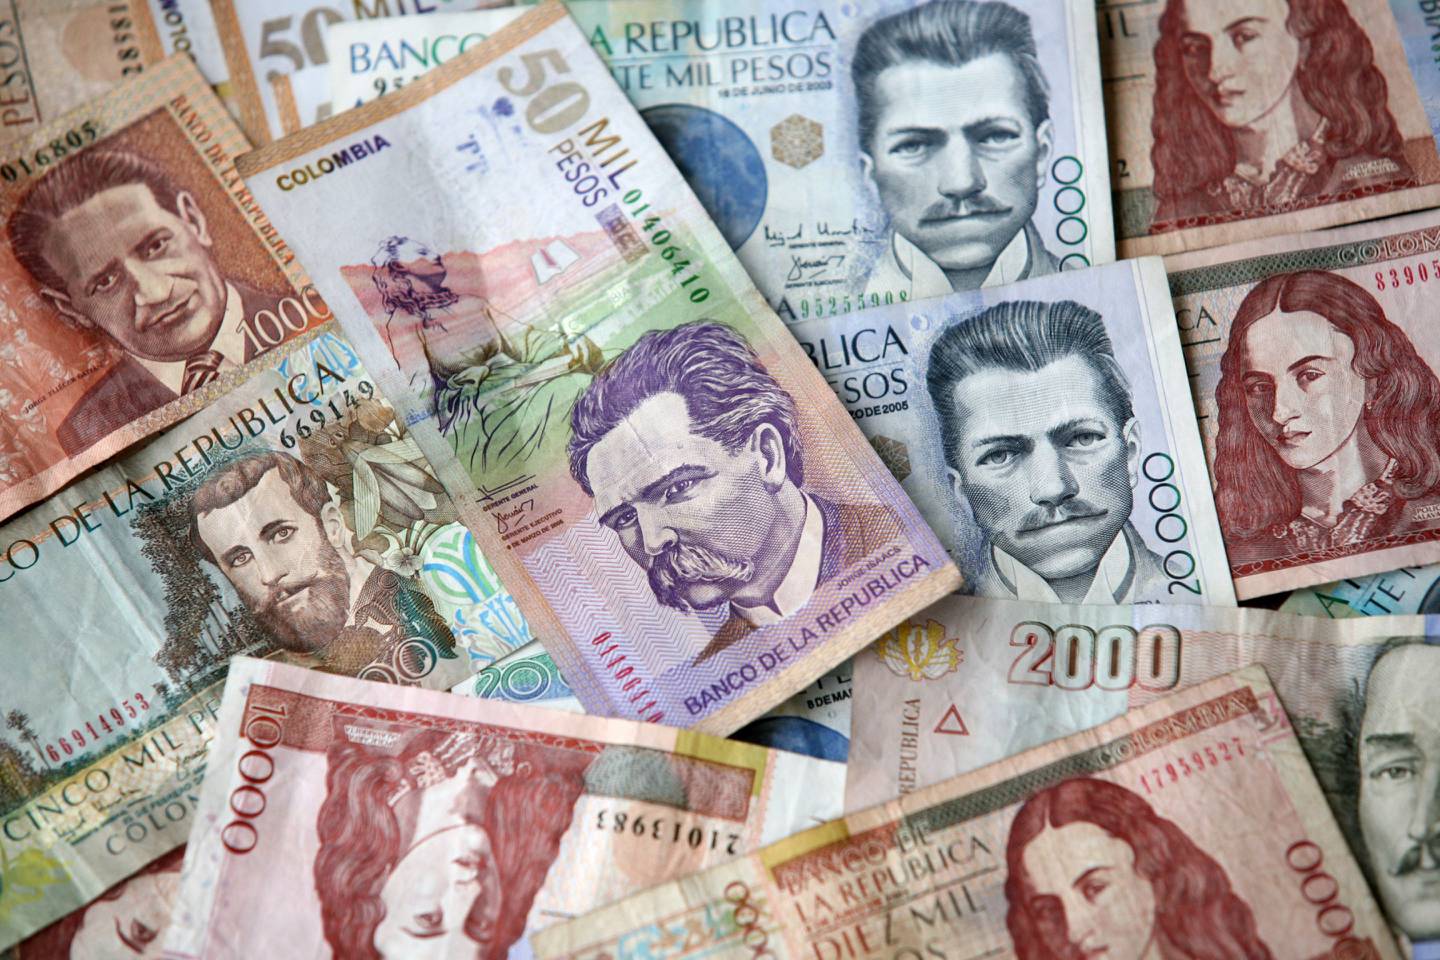 Billetes de pesos colombianos.dfd